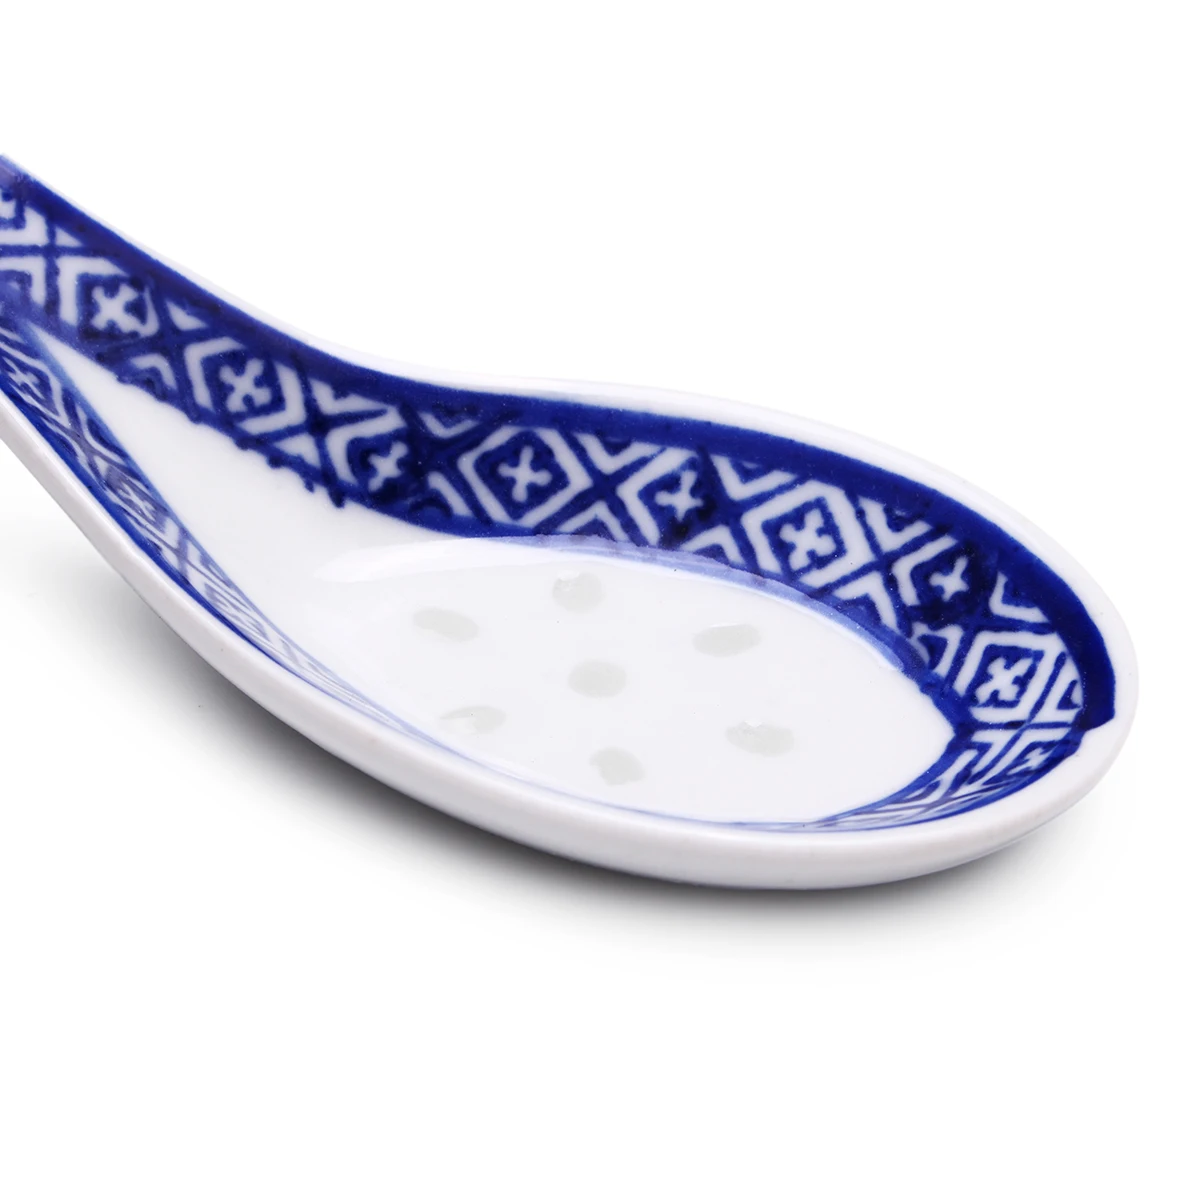 5 шт. китайская керамическая ложка в китайском стиле, Детская рисовая ложка, кухонная посуда, ложка для перемешивания, суповые ложки, голубой ужин для детей